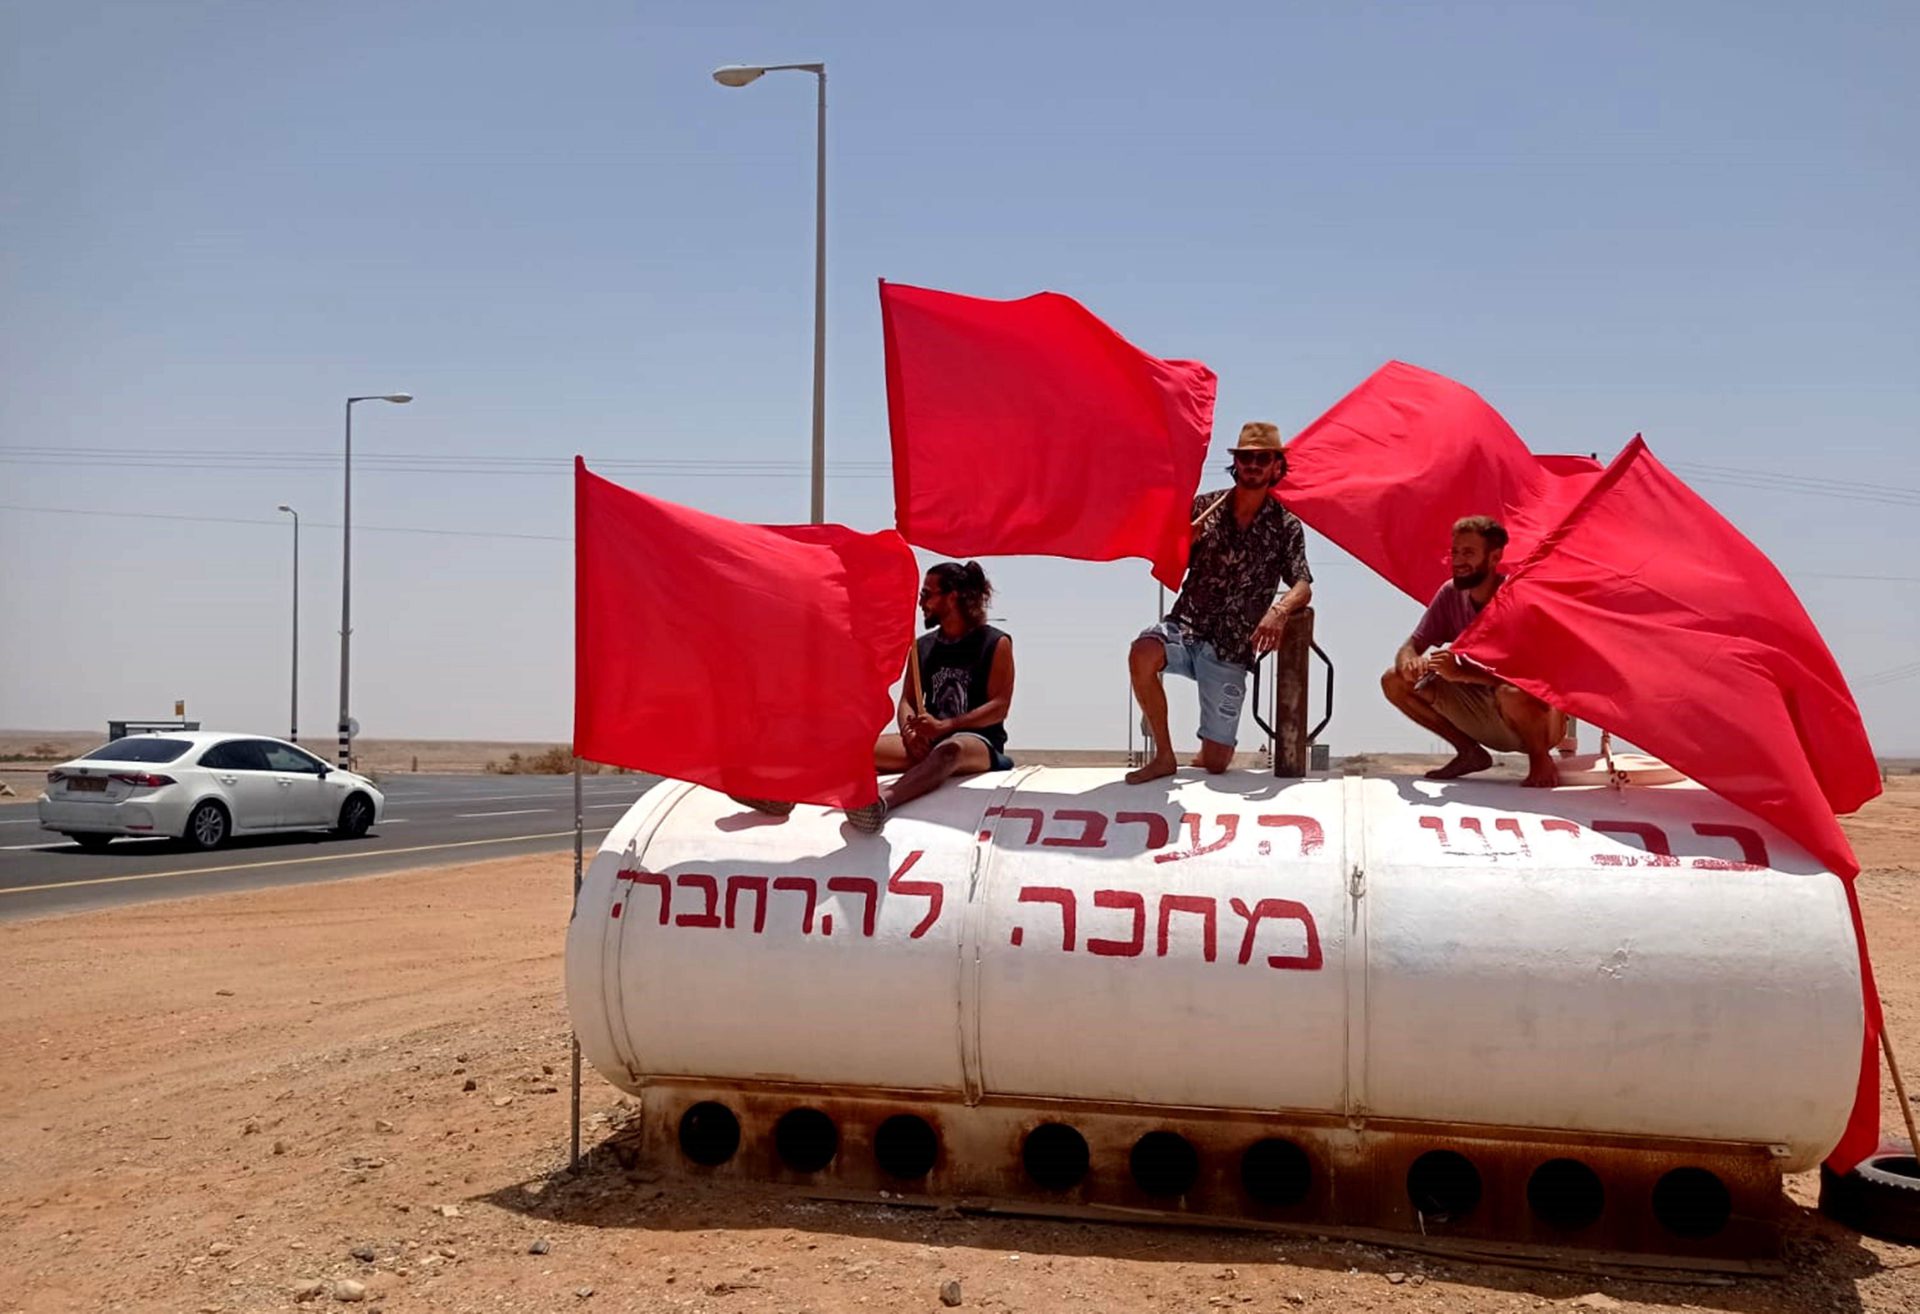 תושבי הערבה התיכונה הציבו דגלים אדומים לאורך כביש תשעים צילום עופר נווה